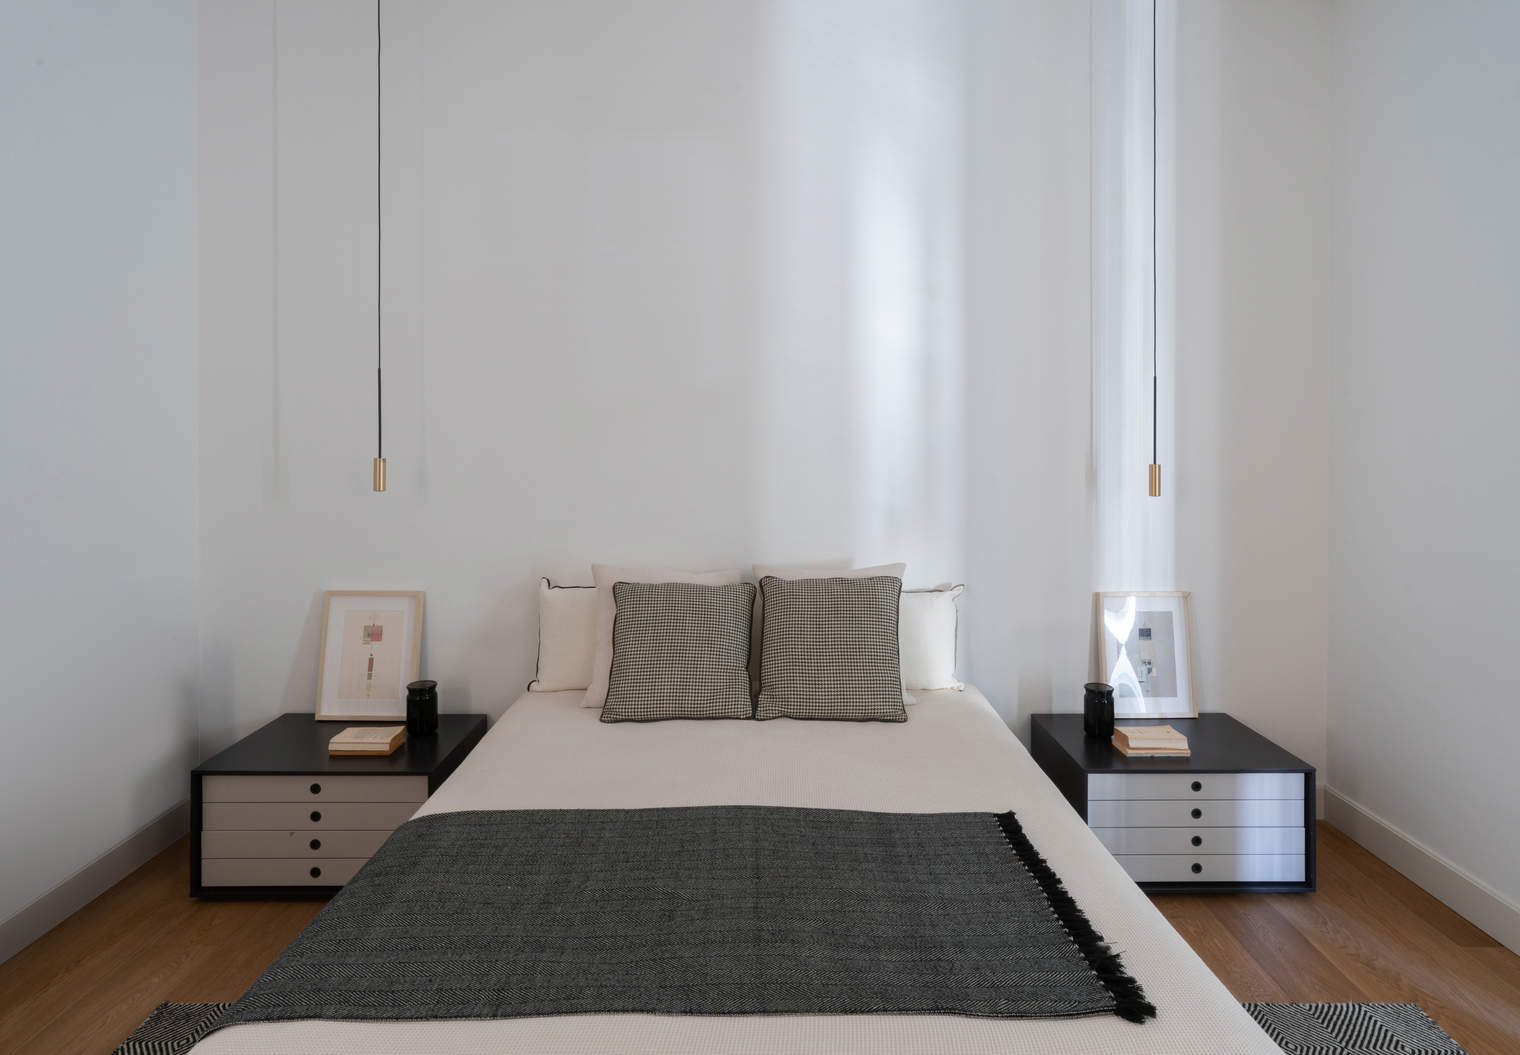 Un dormitorio principal blanco y gris que inspira paz visual.